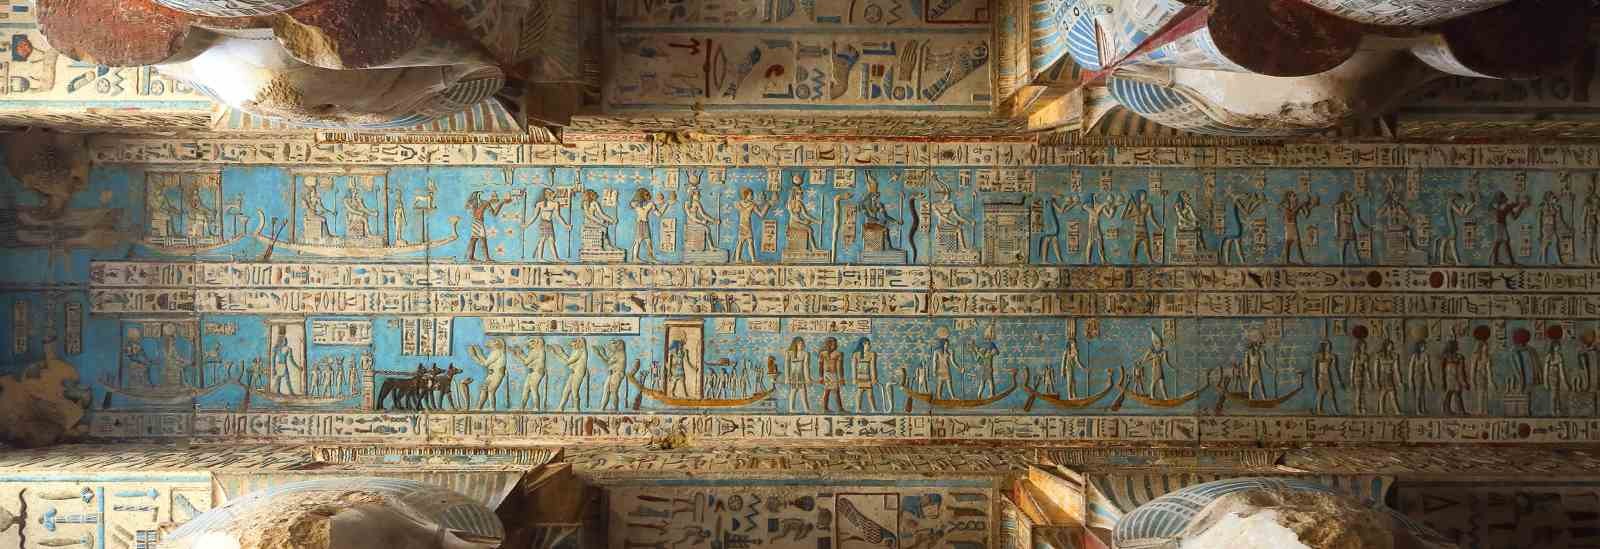 Templo de Dendera | Templo de Abidos